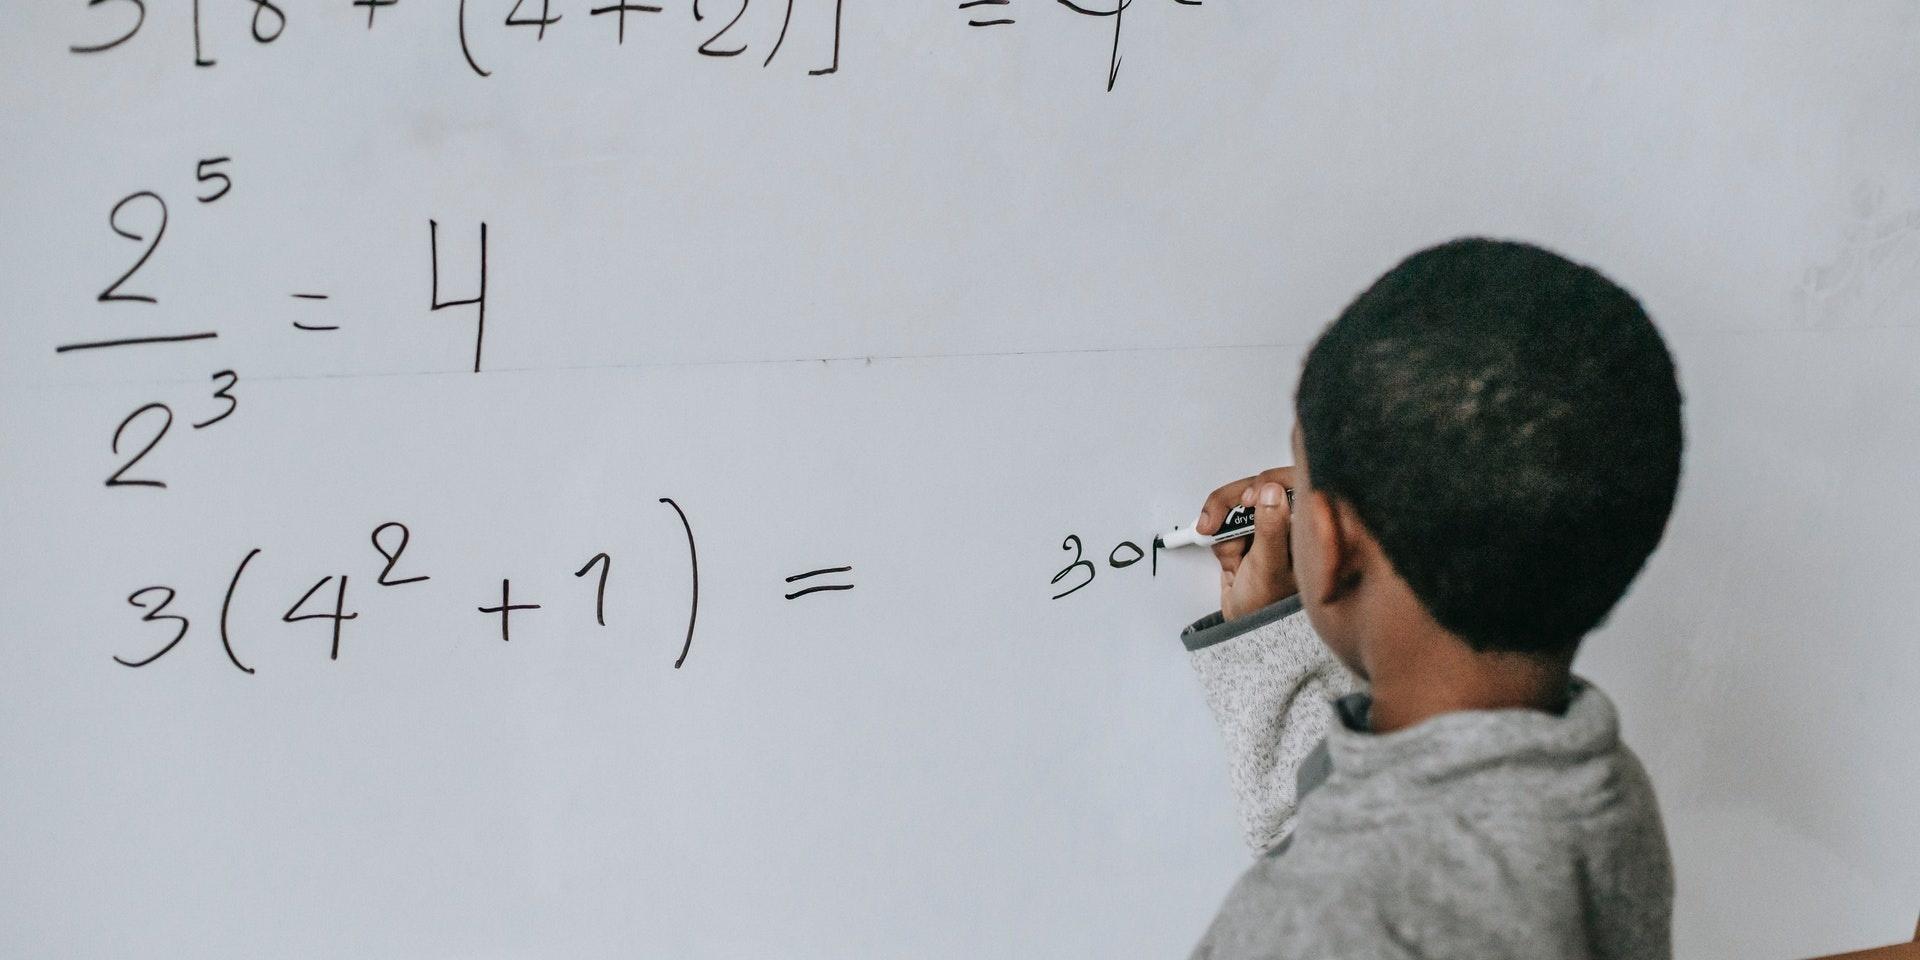 Pojke löser matematiska tal i ett klassrum